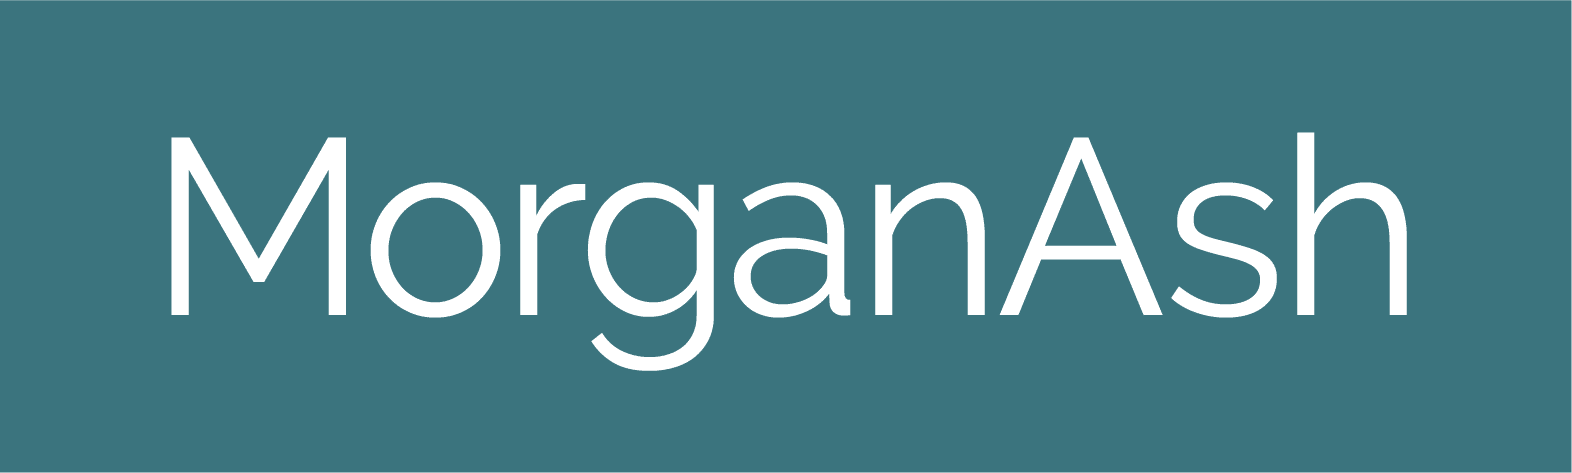 MorganAsh logo